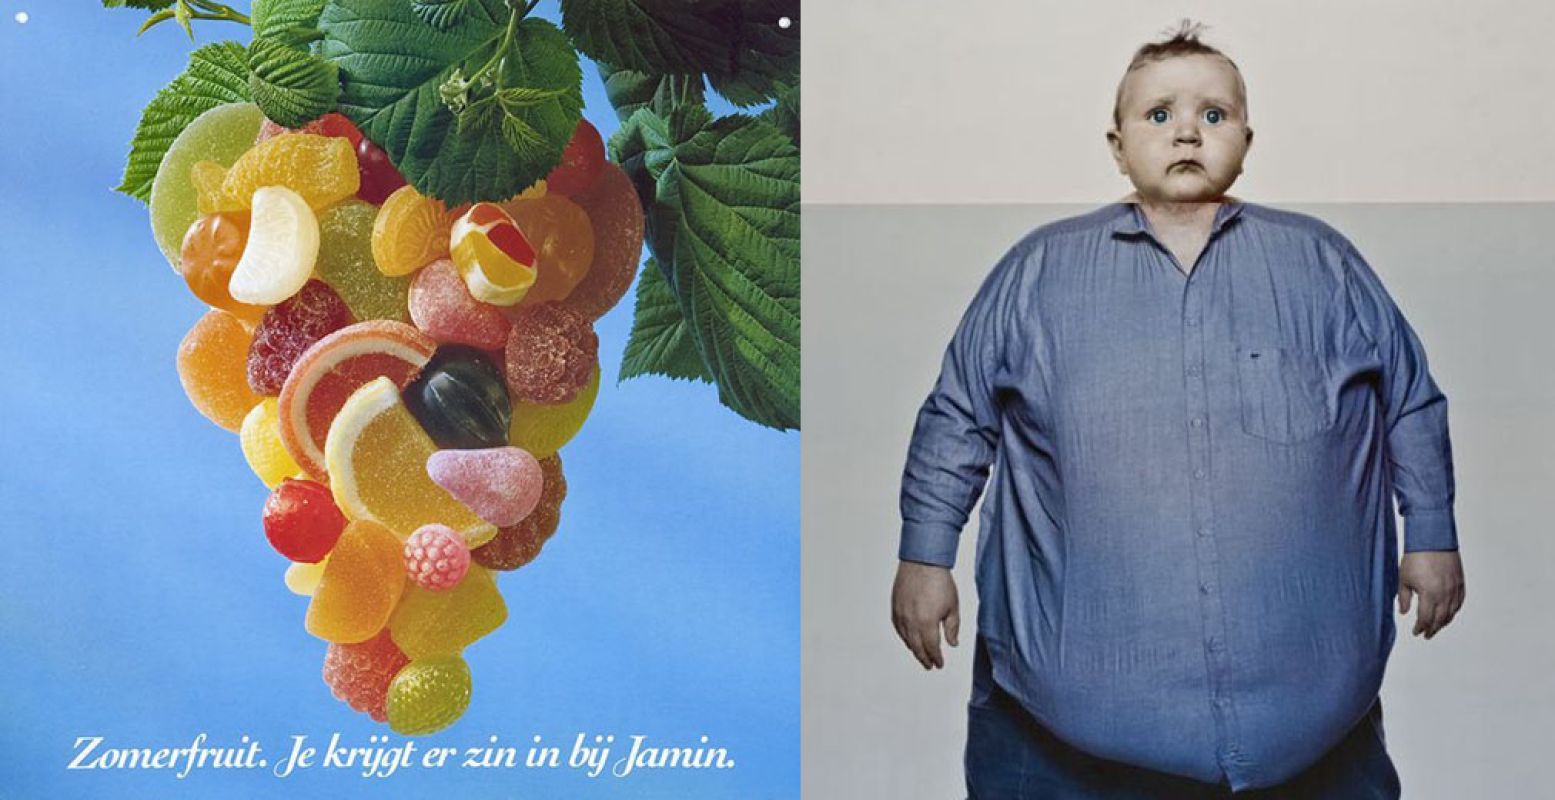 Links: Zomerfruit bij Jamin, affiche 1970. Rechts: Zeg vaker nee, abri 2005, uitgave SIRE. Foto: beide zijn te vinden in de Atlas Van Stolk.